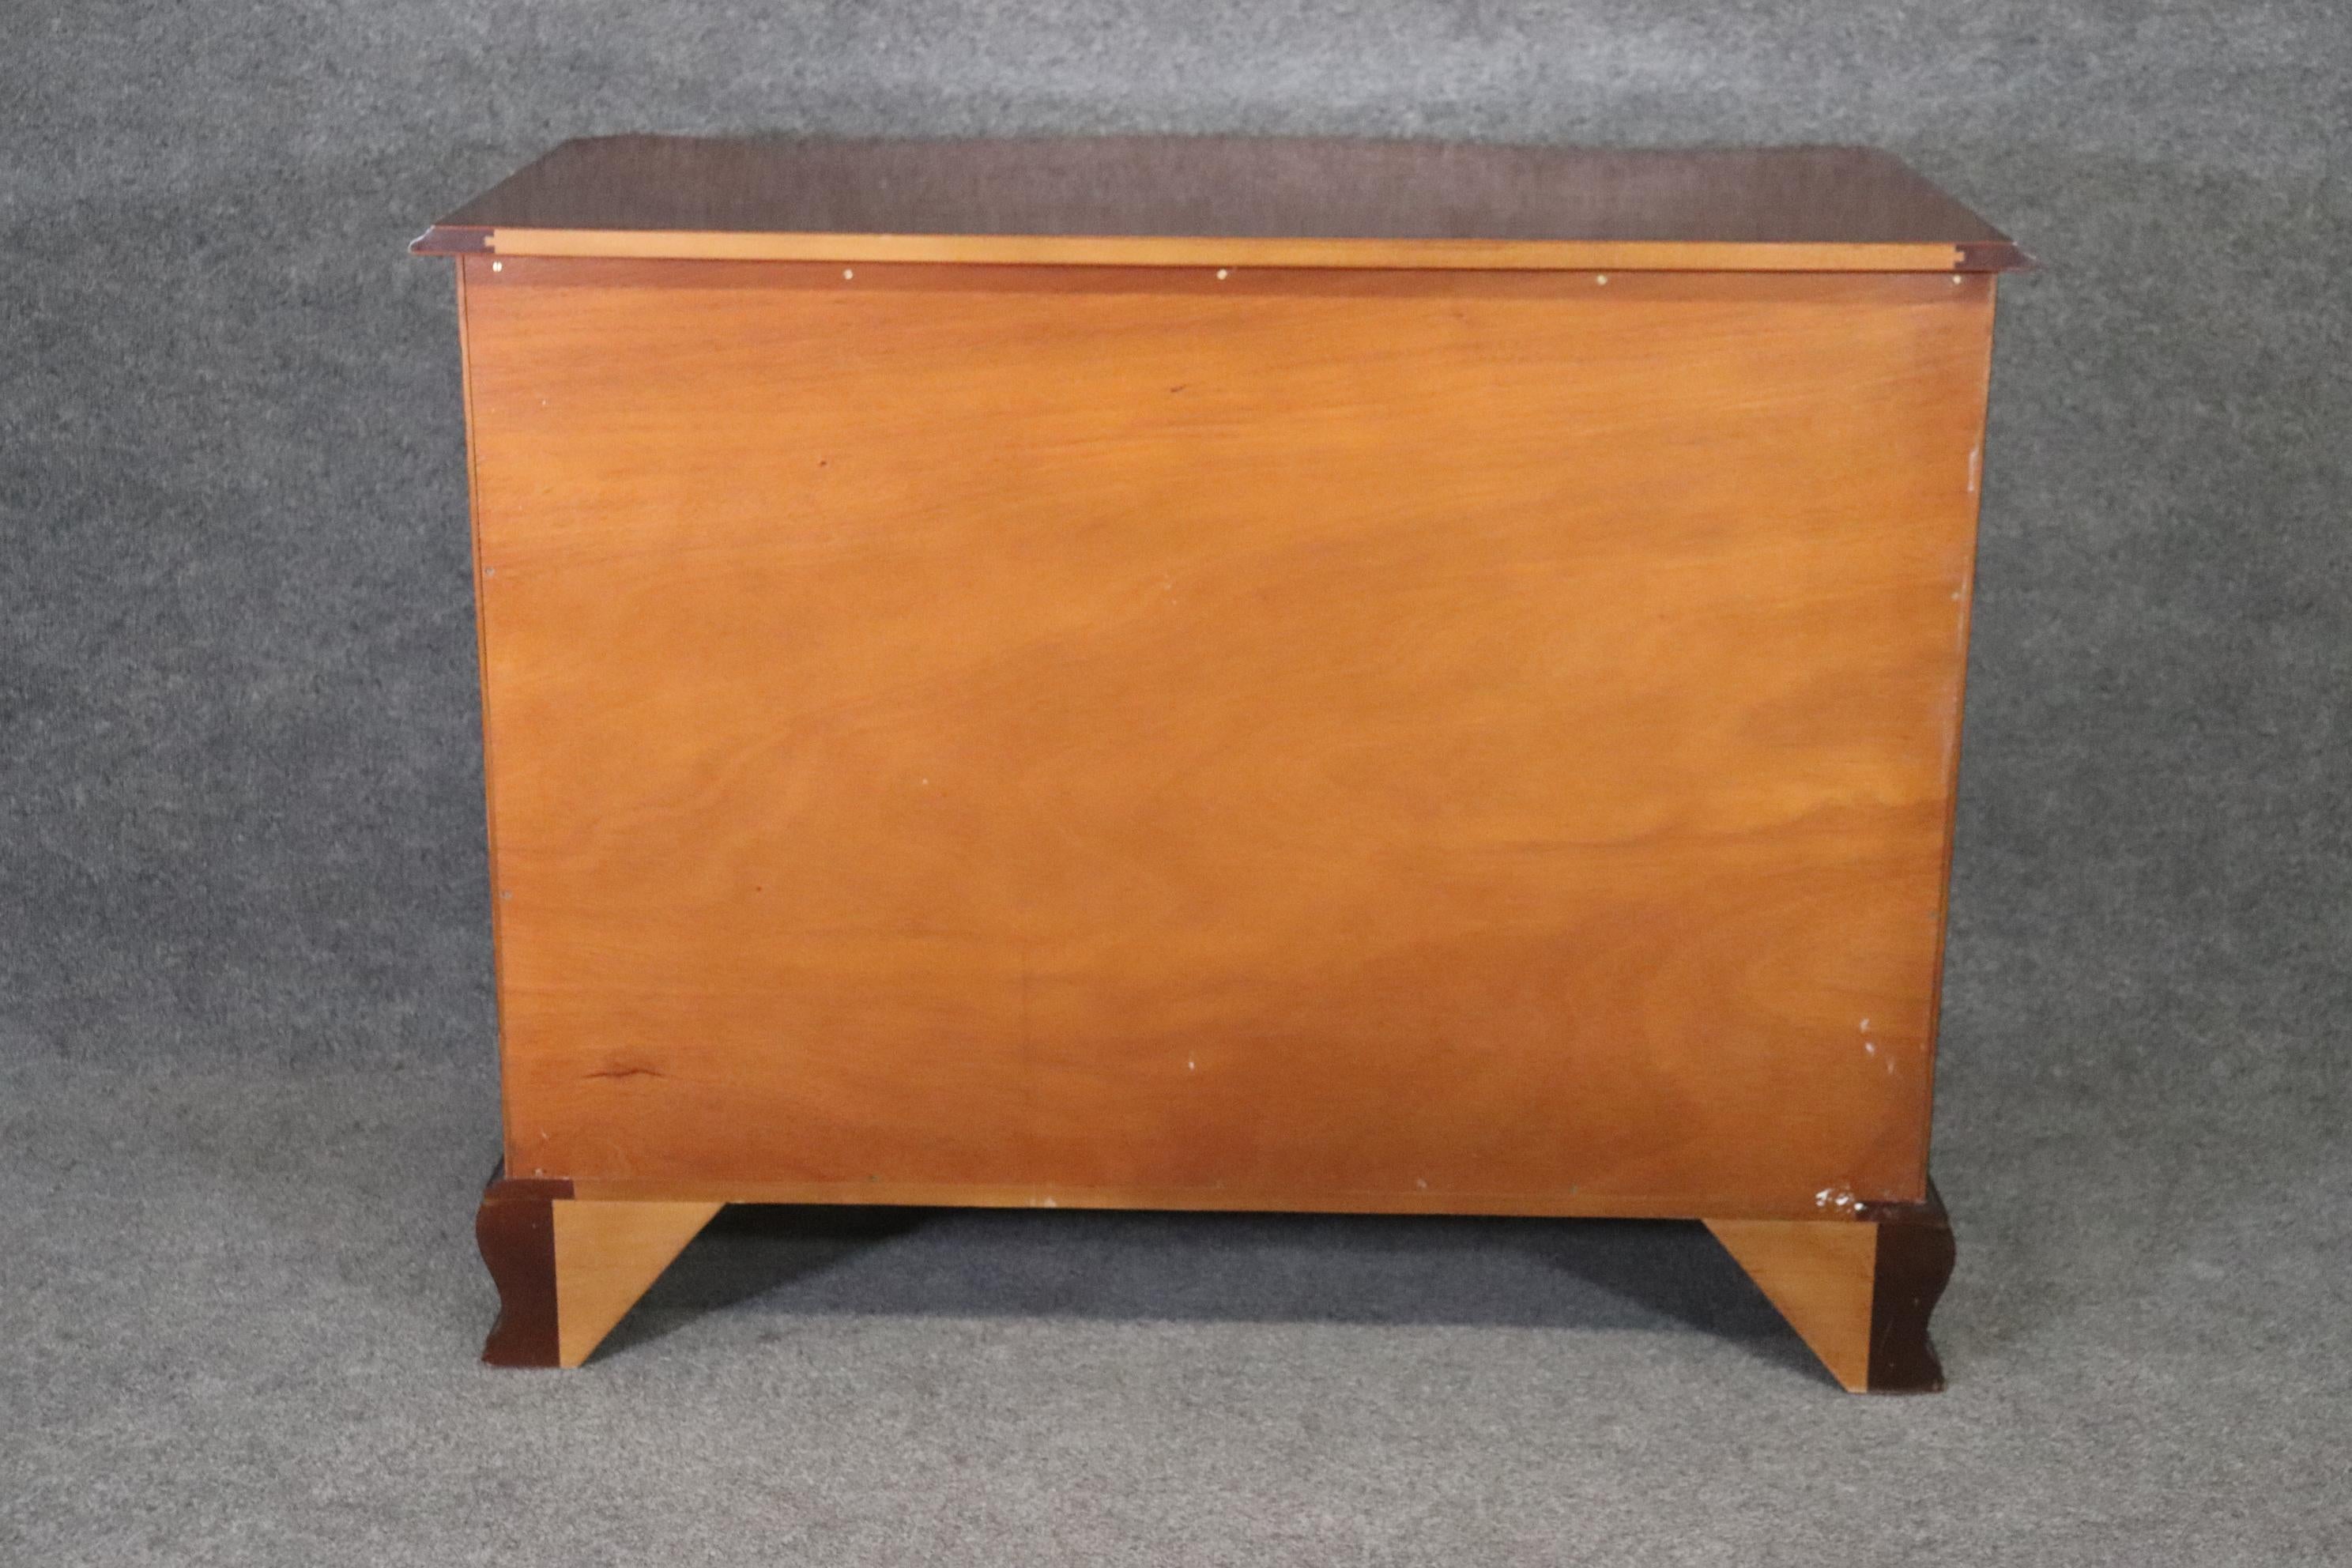 American Vintage Kindel Mahogany 4 Drawer Dresser Chest of Drawers Antique Dresser